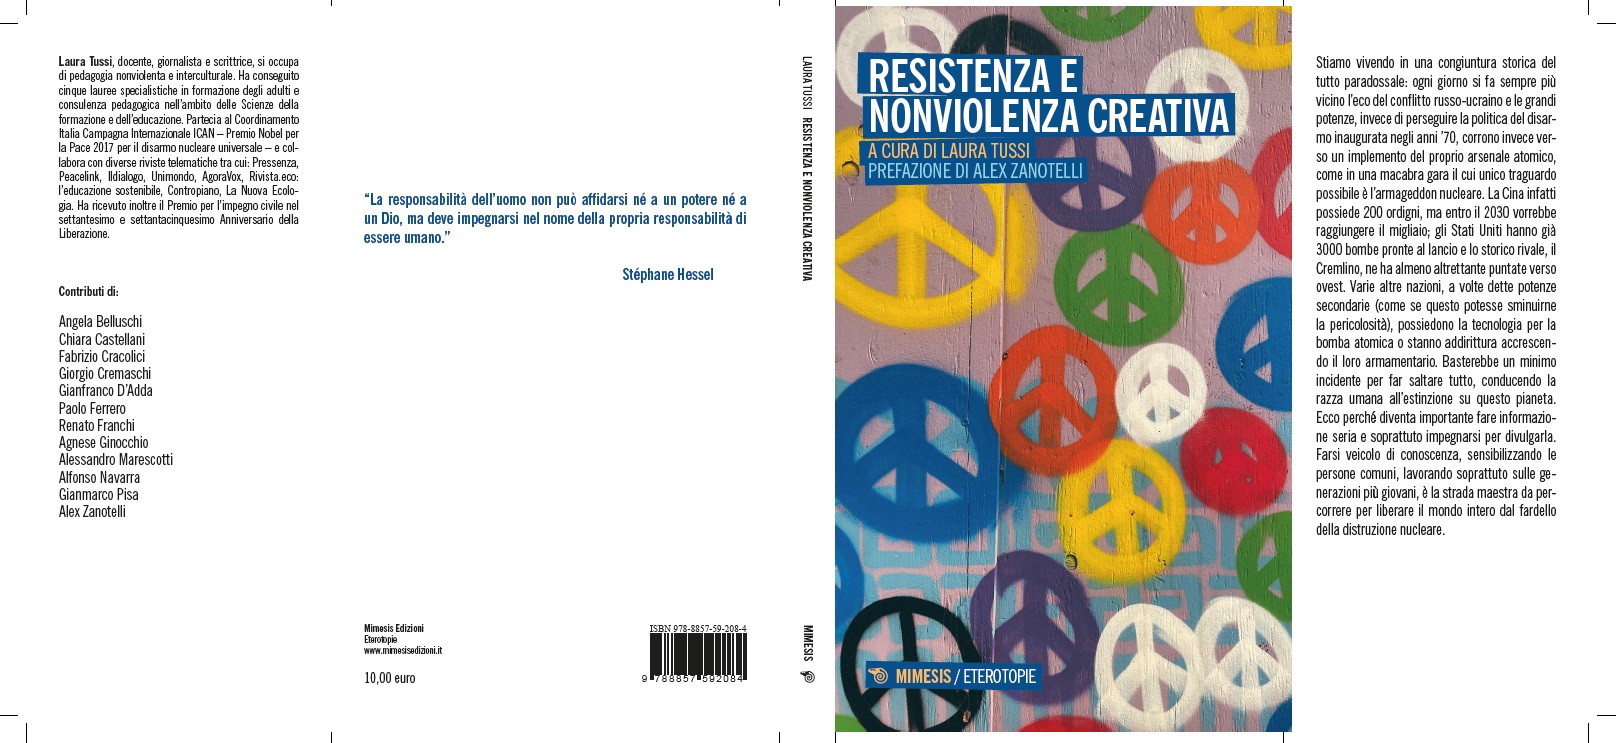 Resistenza e Nonviolenza creativa – KRONOS PRO NATURA